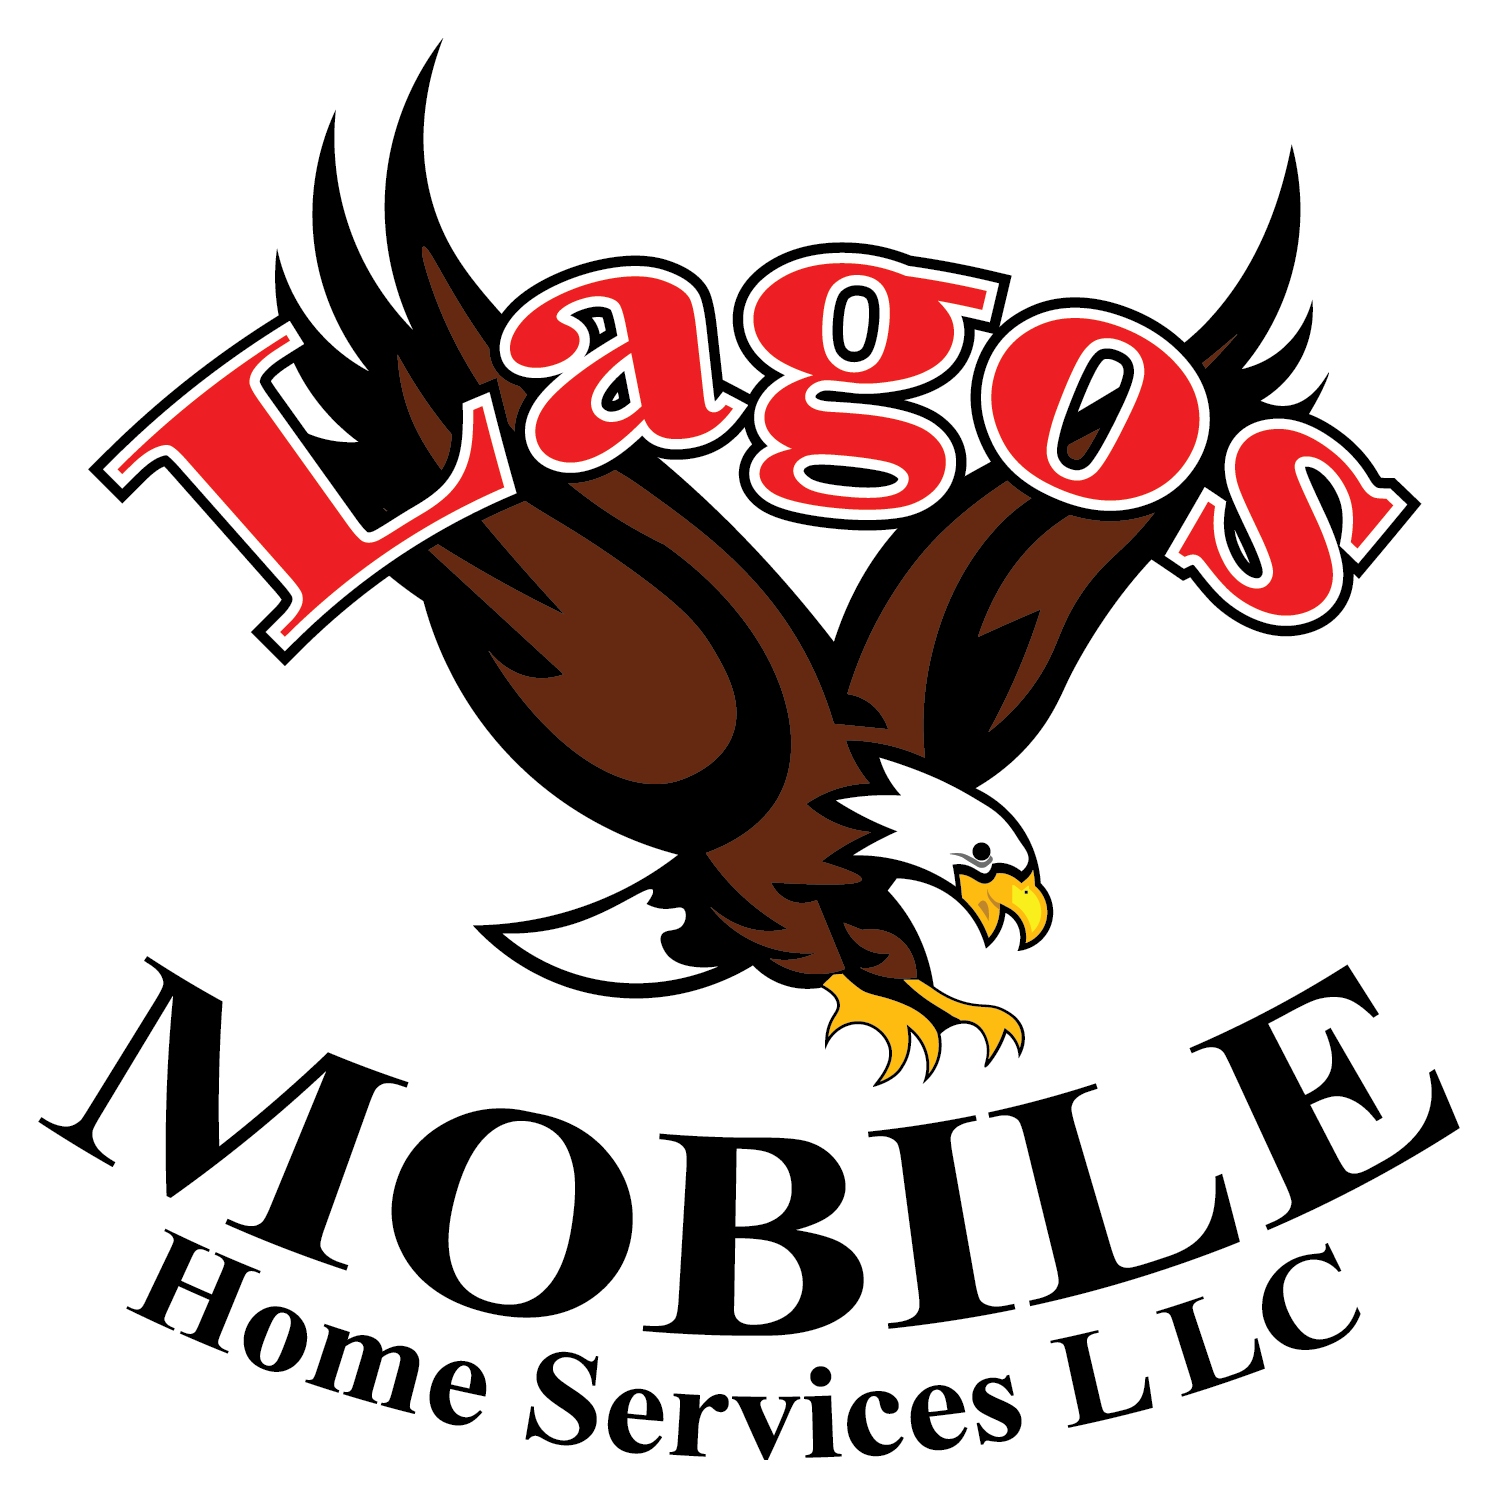 Lagos Mobile Home Services Logo (Sticker) 2